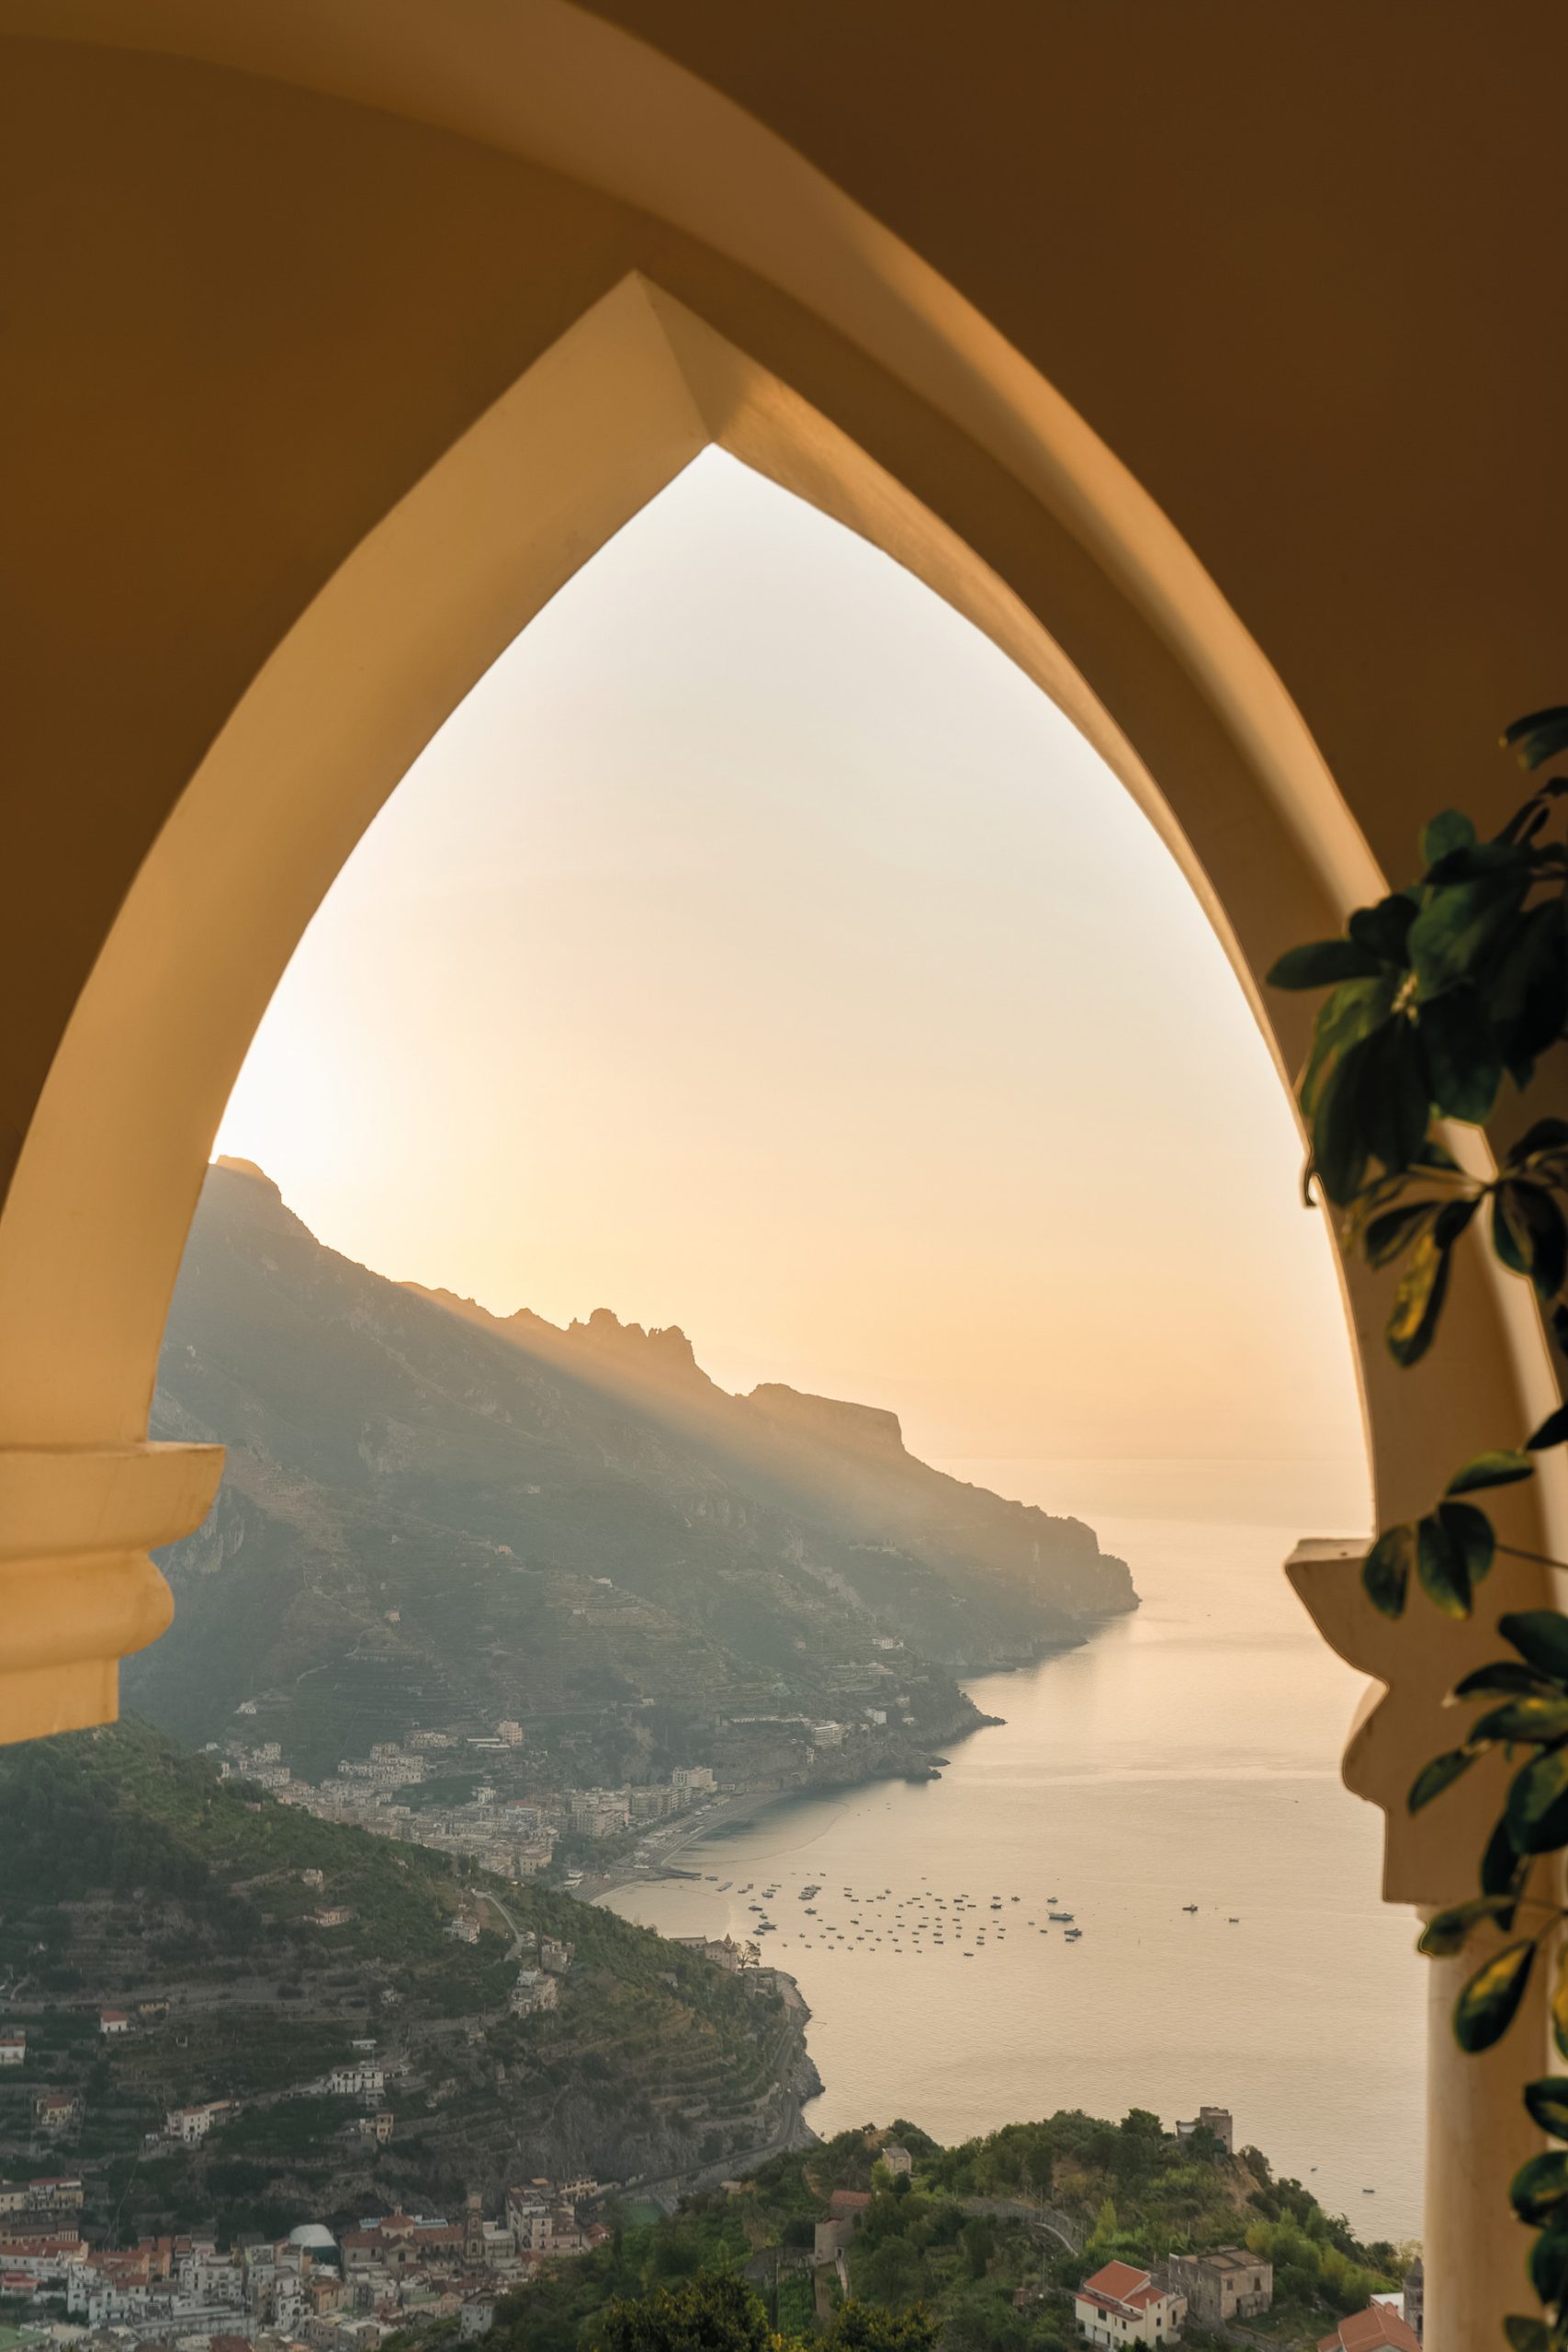 Caruso, A Belmond Hotel, Amalfi Coast - Ravello, Italy - Coastline Ocean View